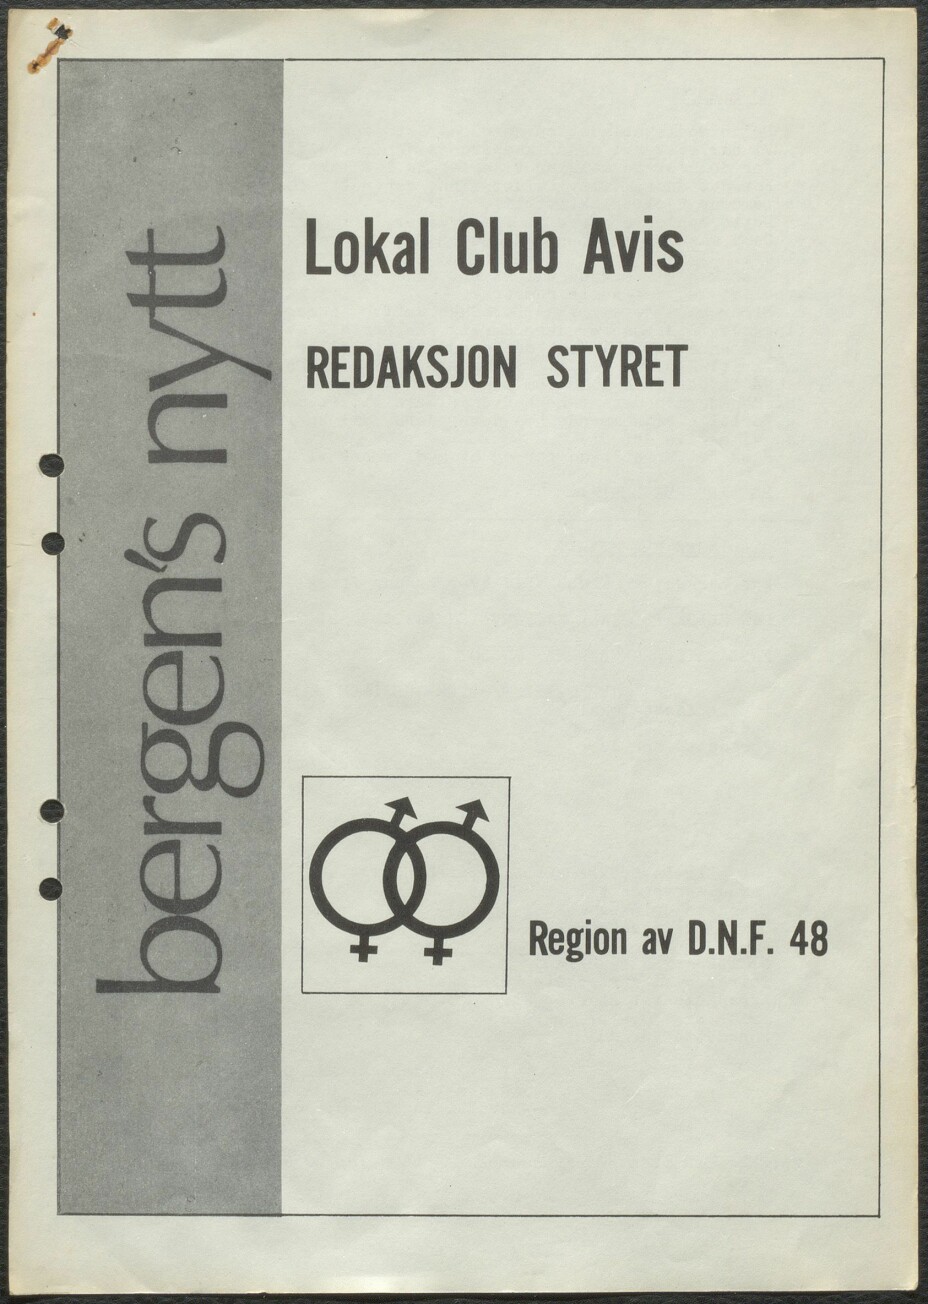 Lokal Club Avis. Den første utgaven av Bergensnytt, 1972.